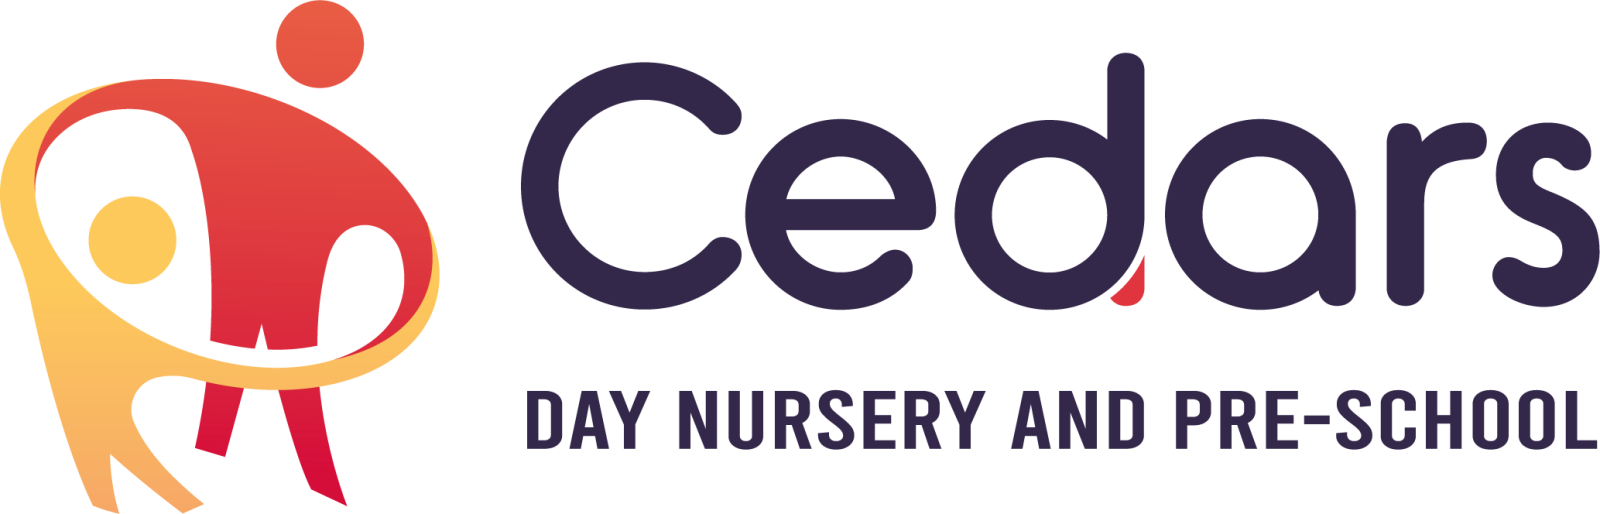 Cedars Day Nursery and Pre-School